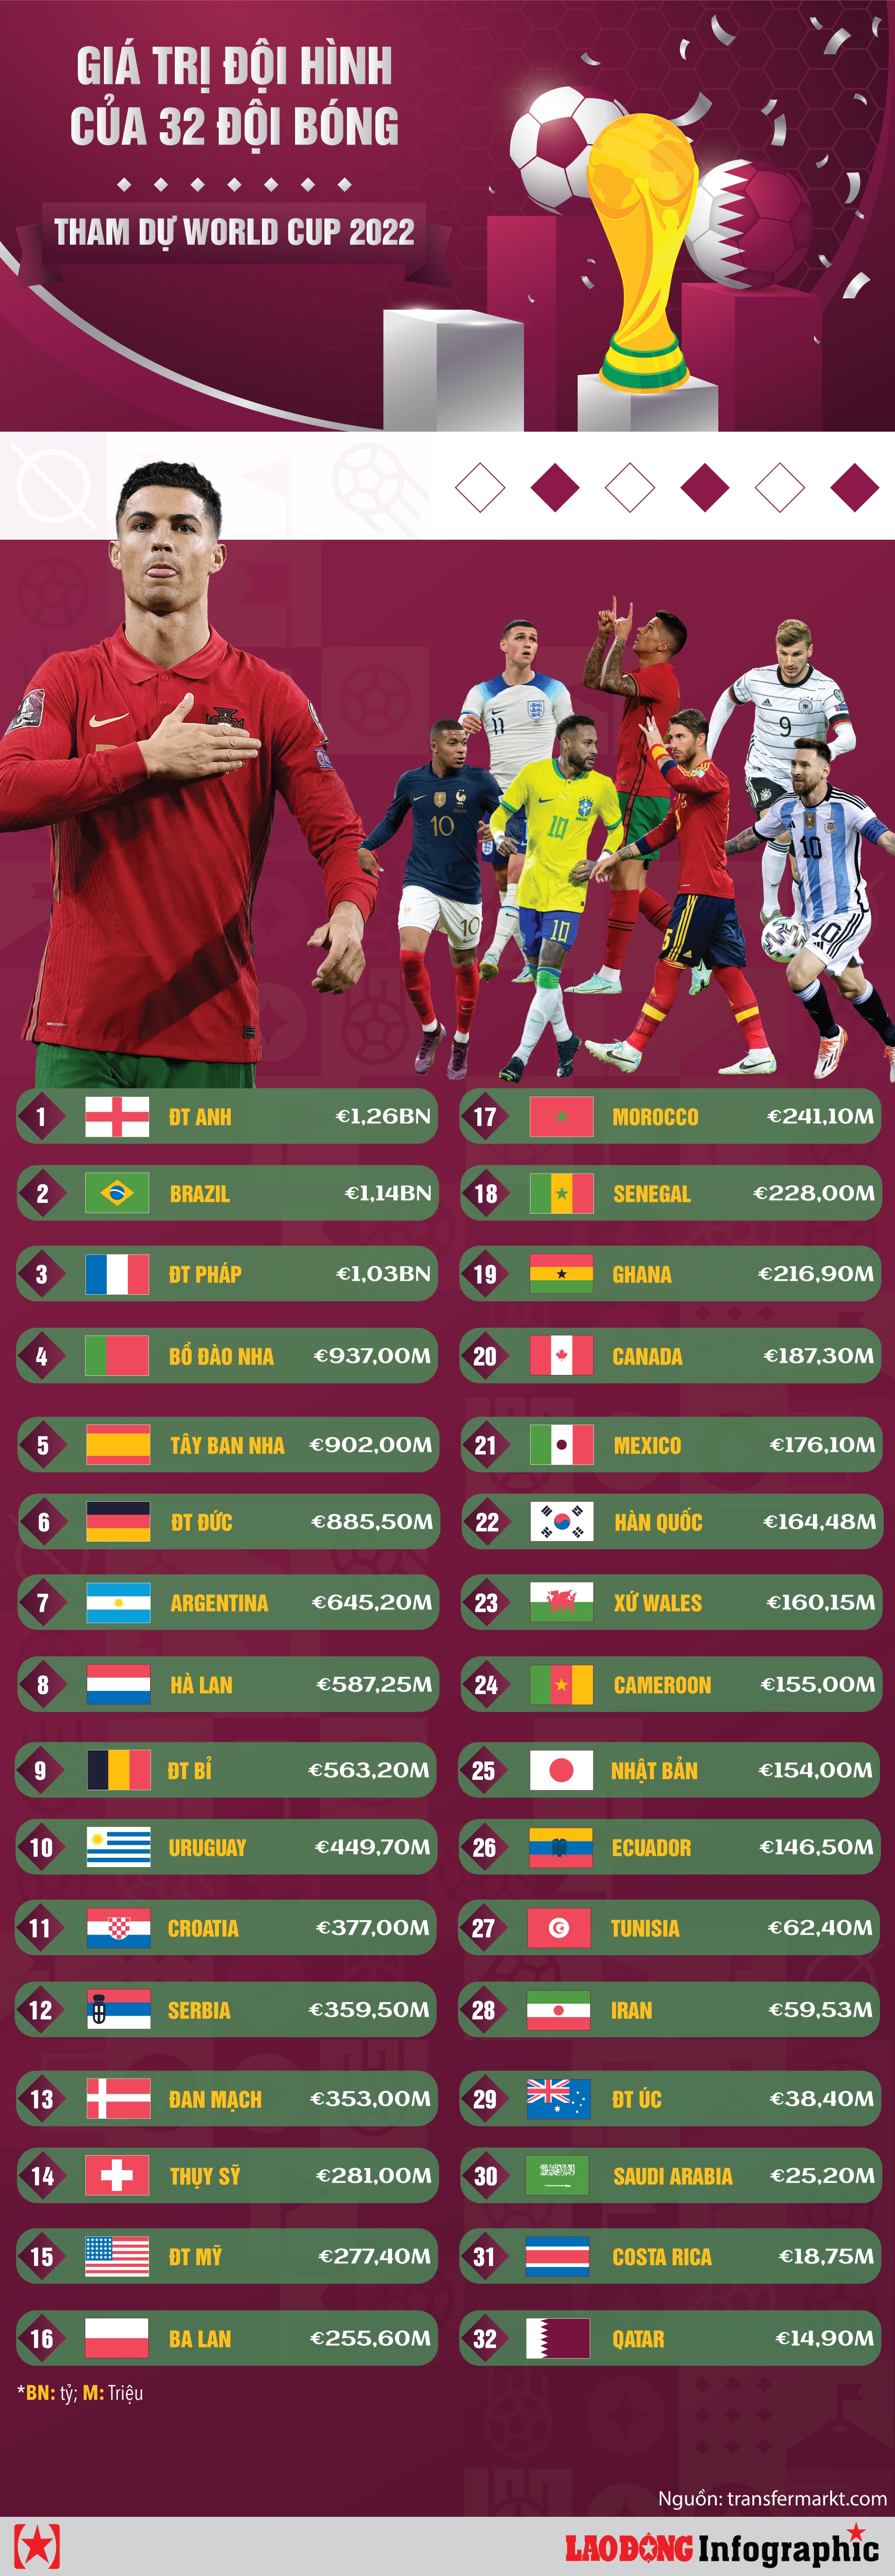 Giá trị đội hình của 32 đội bóng tham dự World Cup 2022